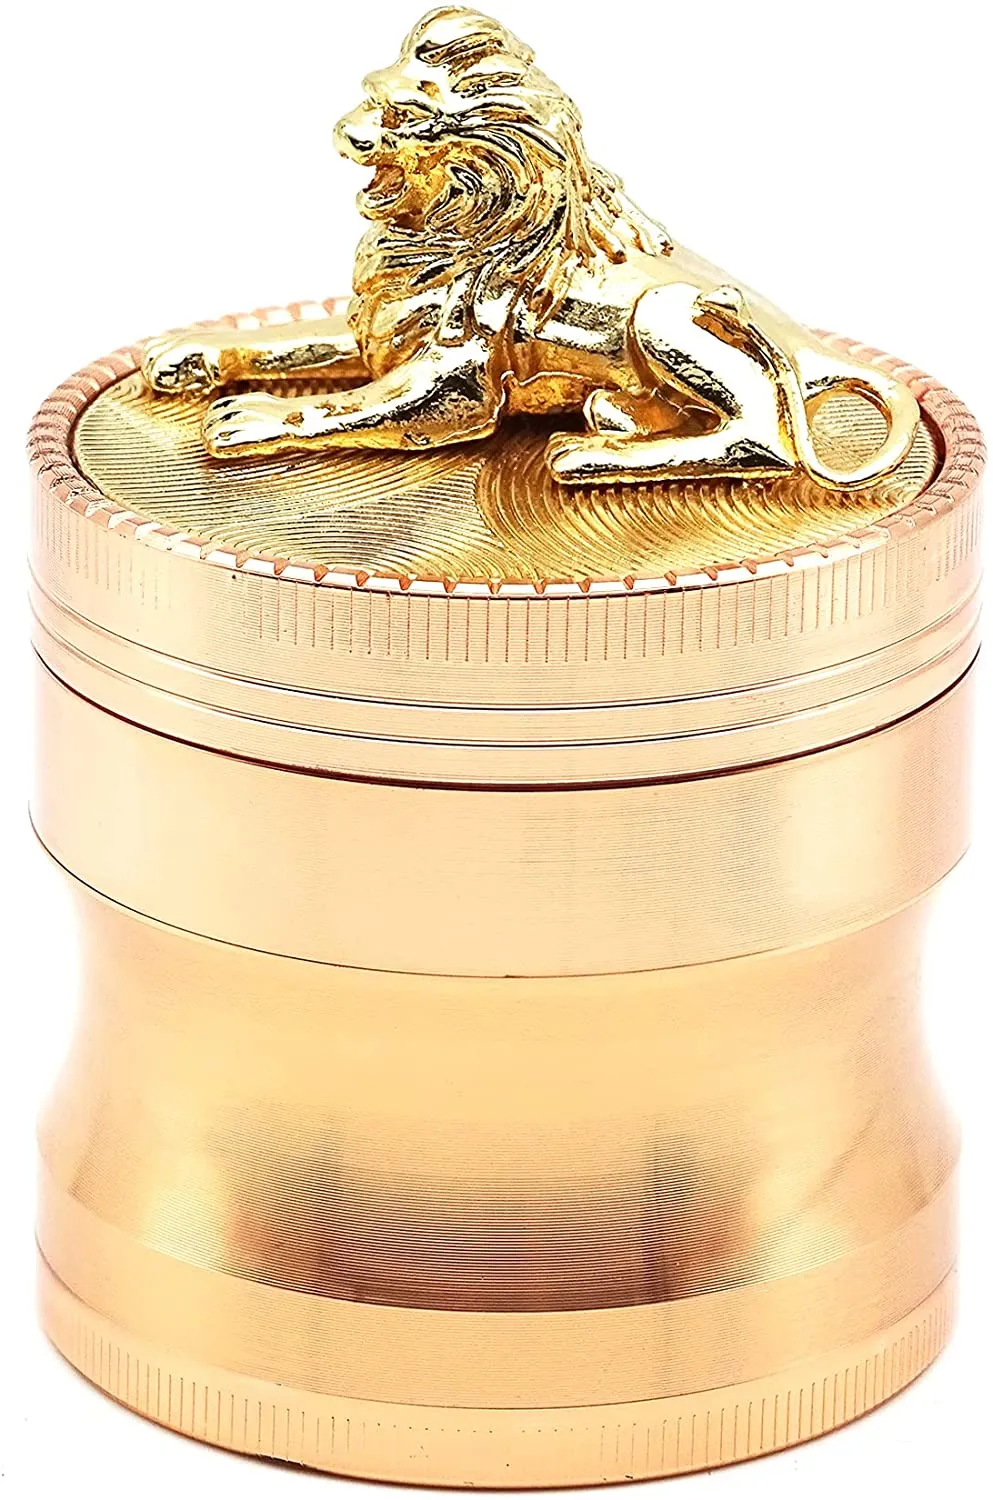 뚜껑에 단단한 사자 모양이있는 헤비 듀티 대형 향신료 분쇄기 (로즈 골드) 그라인더